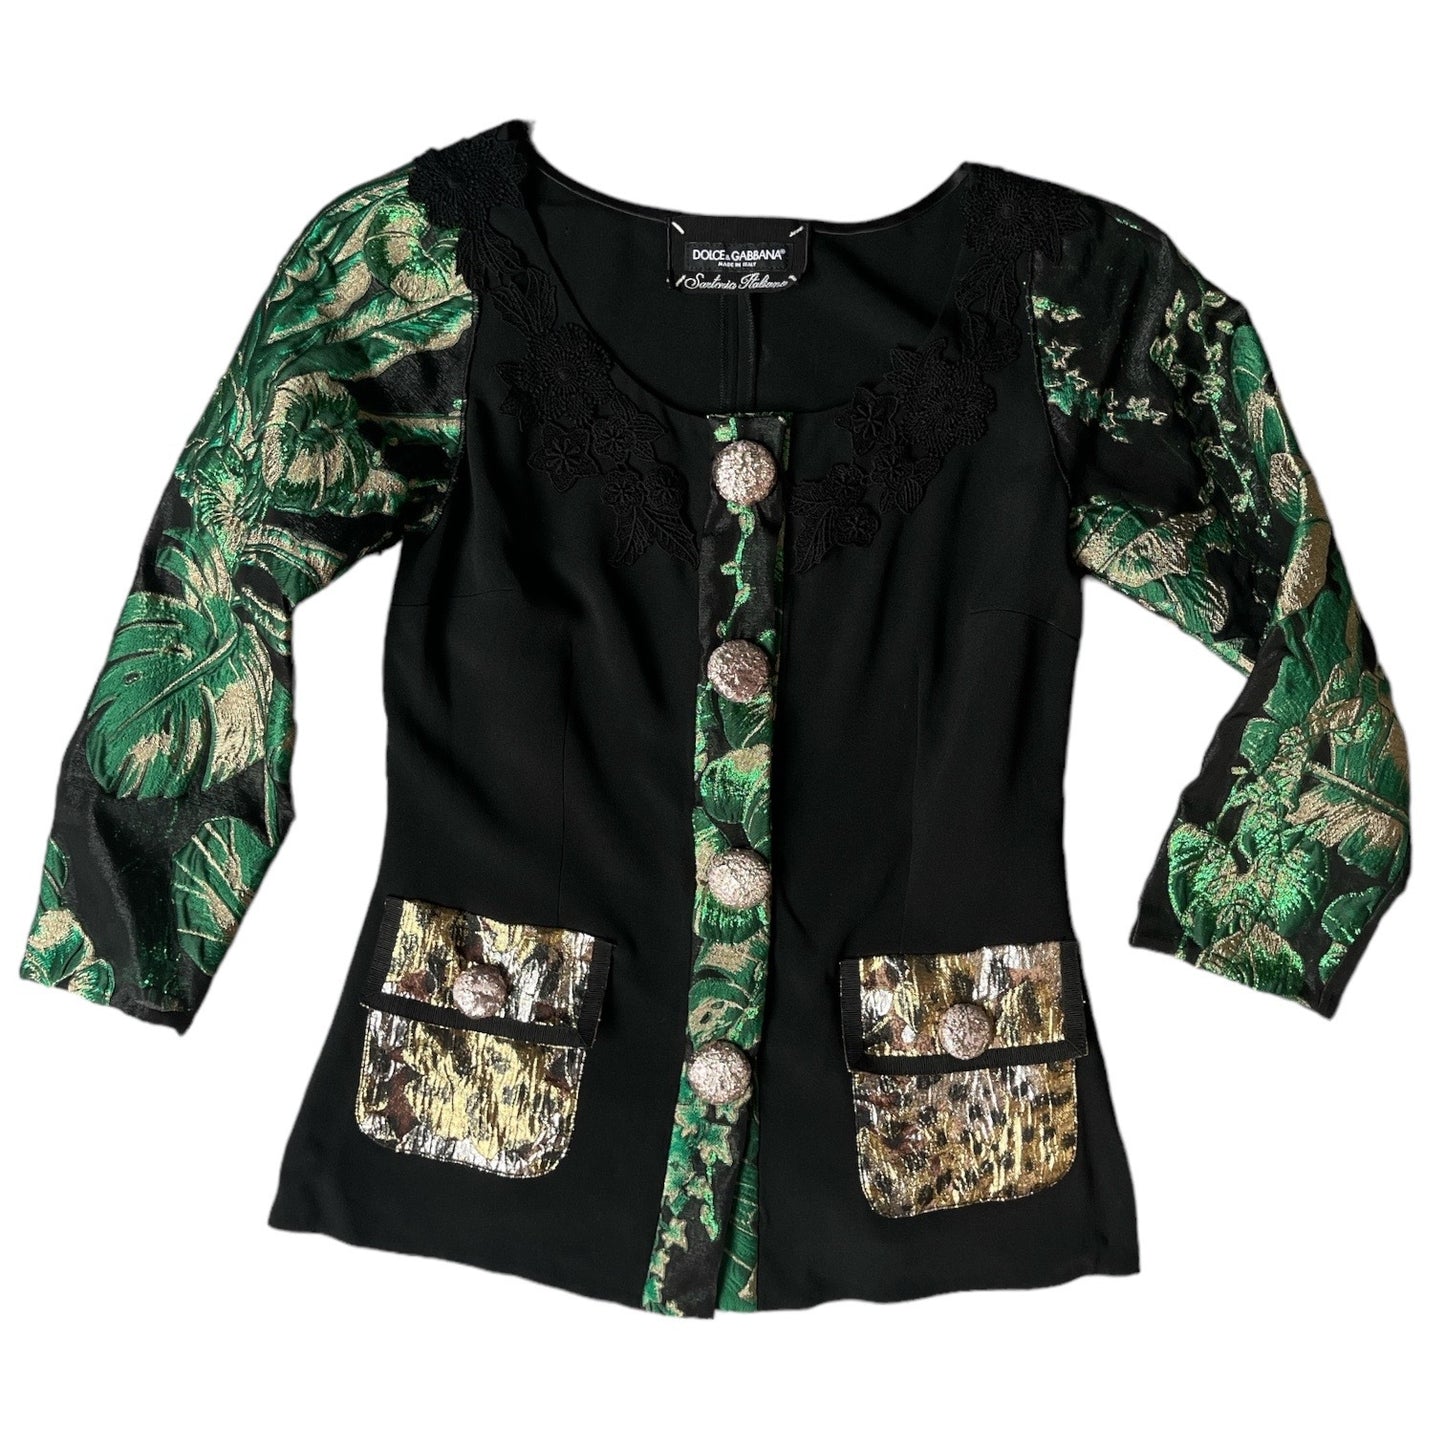 Dolce & Gabbana Cady Jacket With Jacquard Details -size S Designer Luxury Fashion